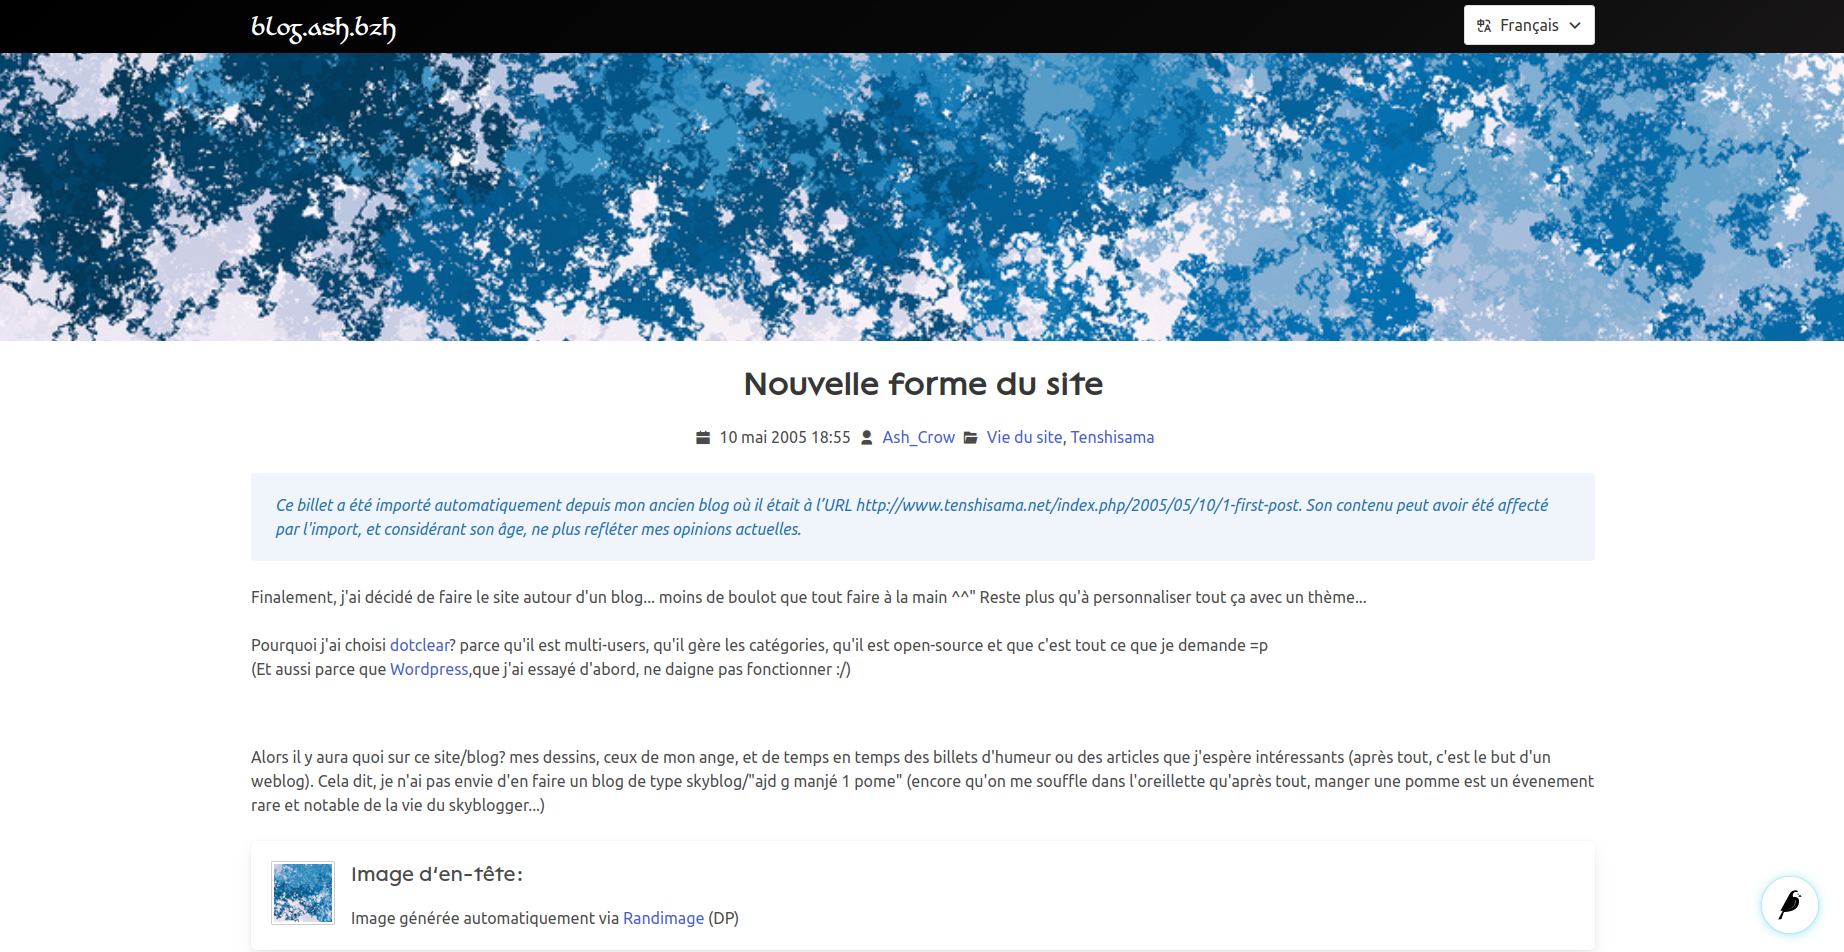 Capture d'écran du site, montrant un billet intitulé "Nouvelle forme du site" et daté du 10 mai 2005. L'image d'en-tête est un dégradé de bleus et de blancs ressemblant un peu à des nuages